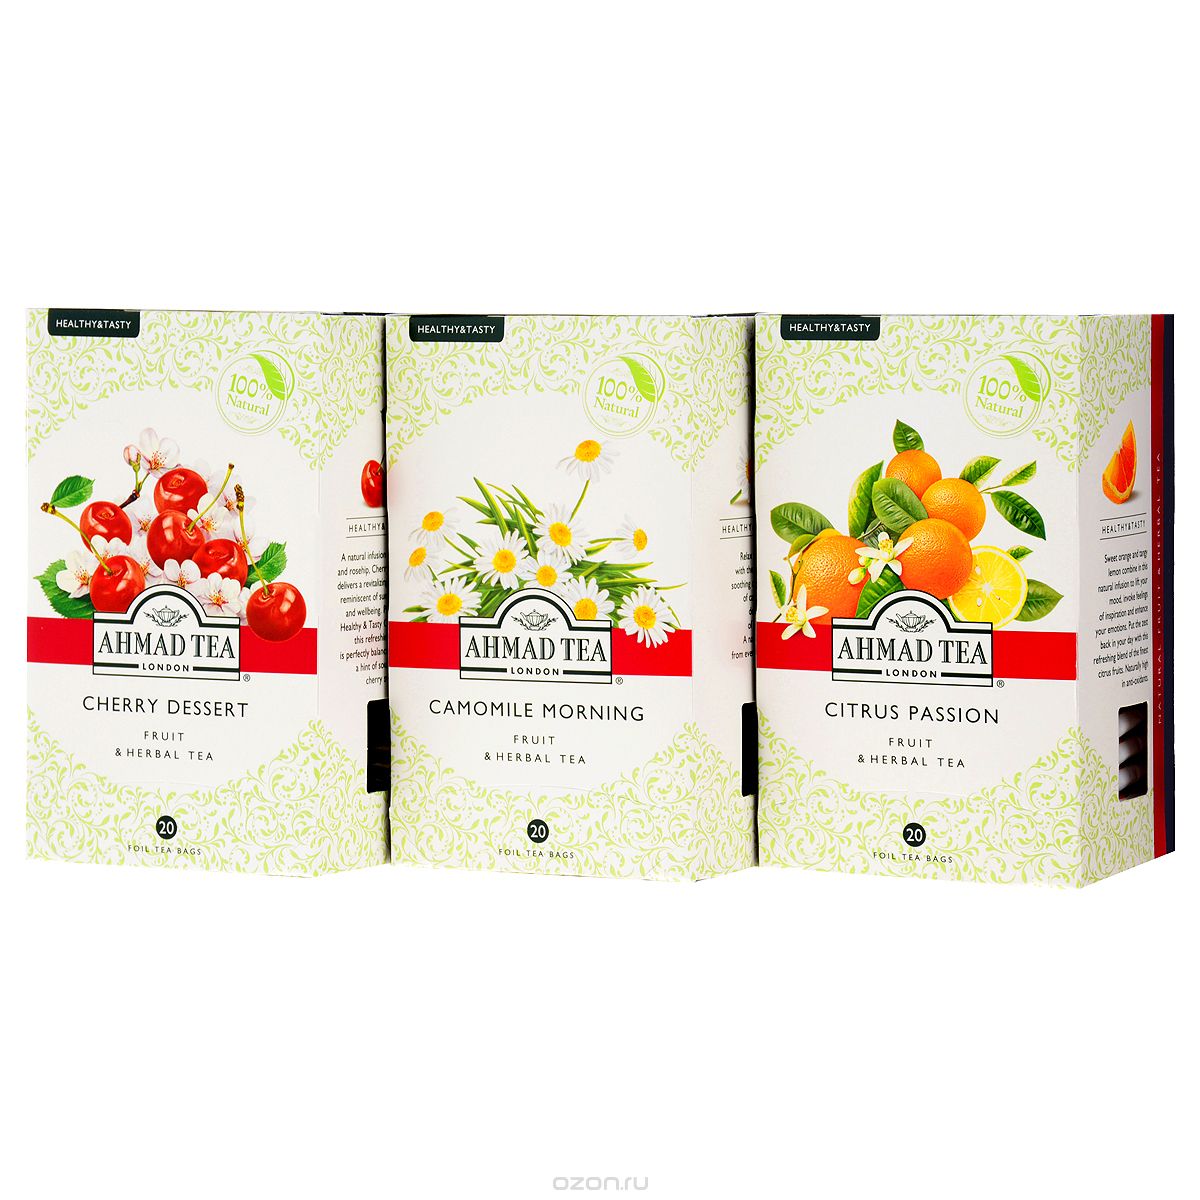 Ahmad Tea Healthy&Tasty 1    , 60 